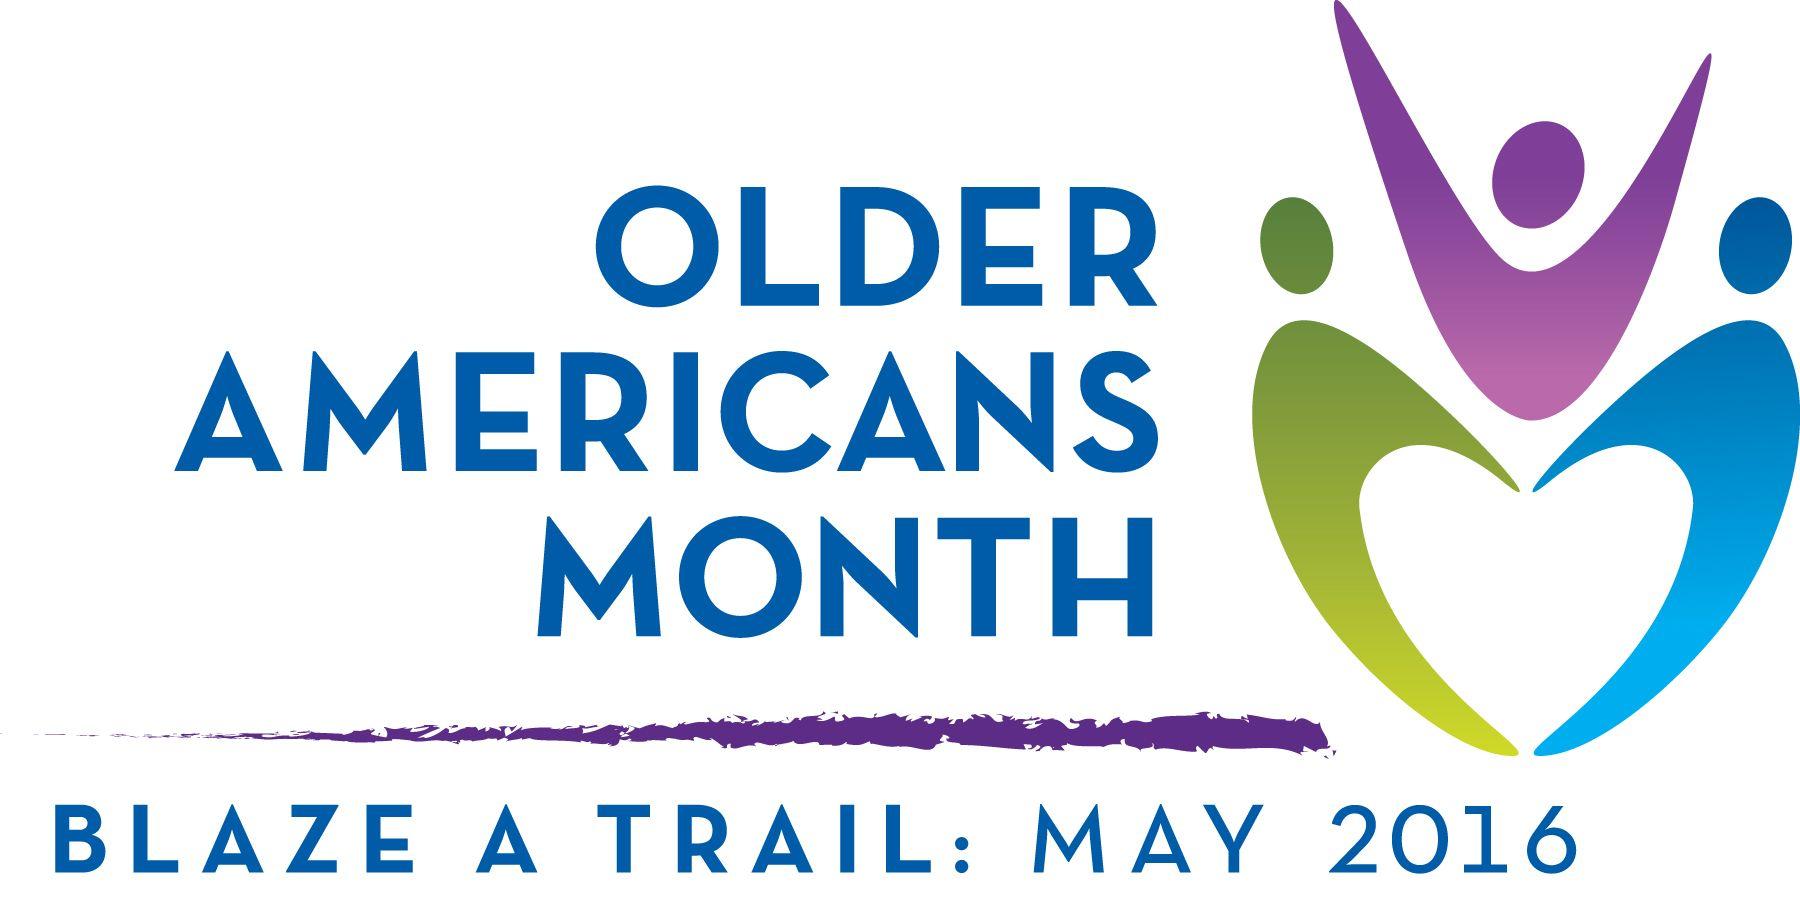 Older Logo - Older Americans Month 2016: 